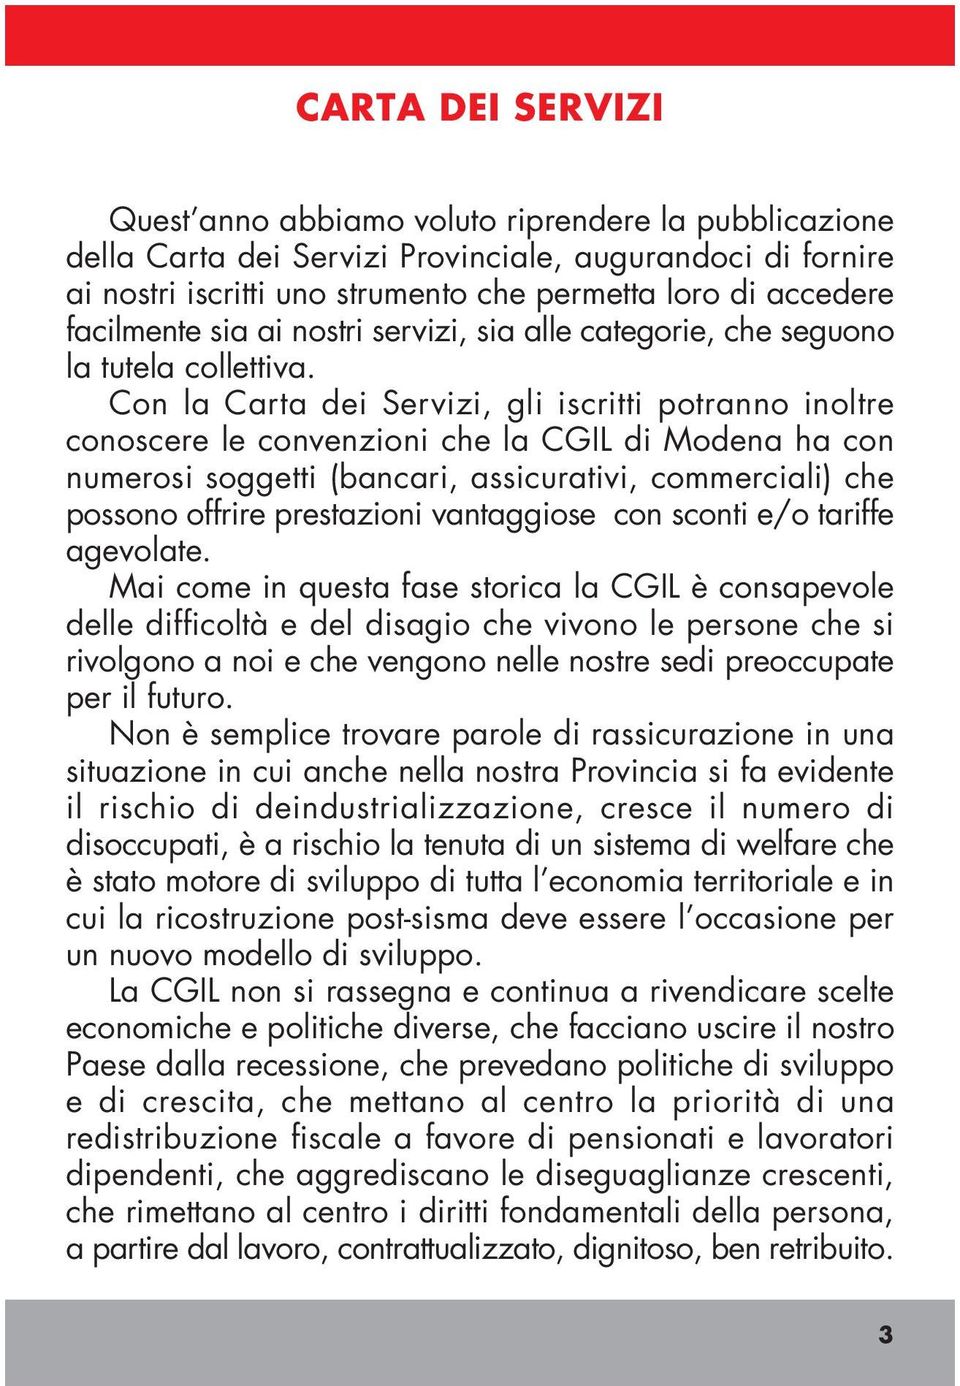 Con la Carta dei Servizi, gli iscritti potranno inoltre conoscere le convenzioni che la CGIL di Modena ha con numerosi soggetti (bancari, assicurativi, commerciali) che possono offrire prestazioni